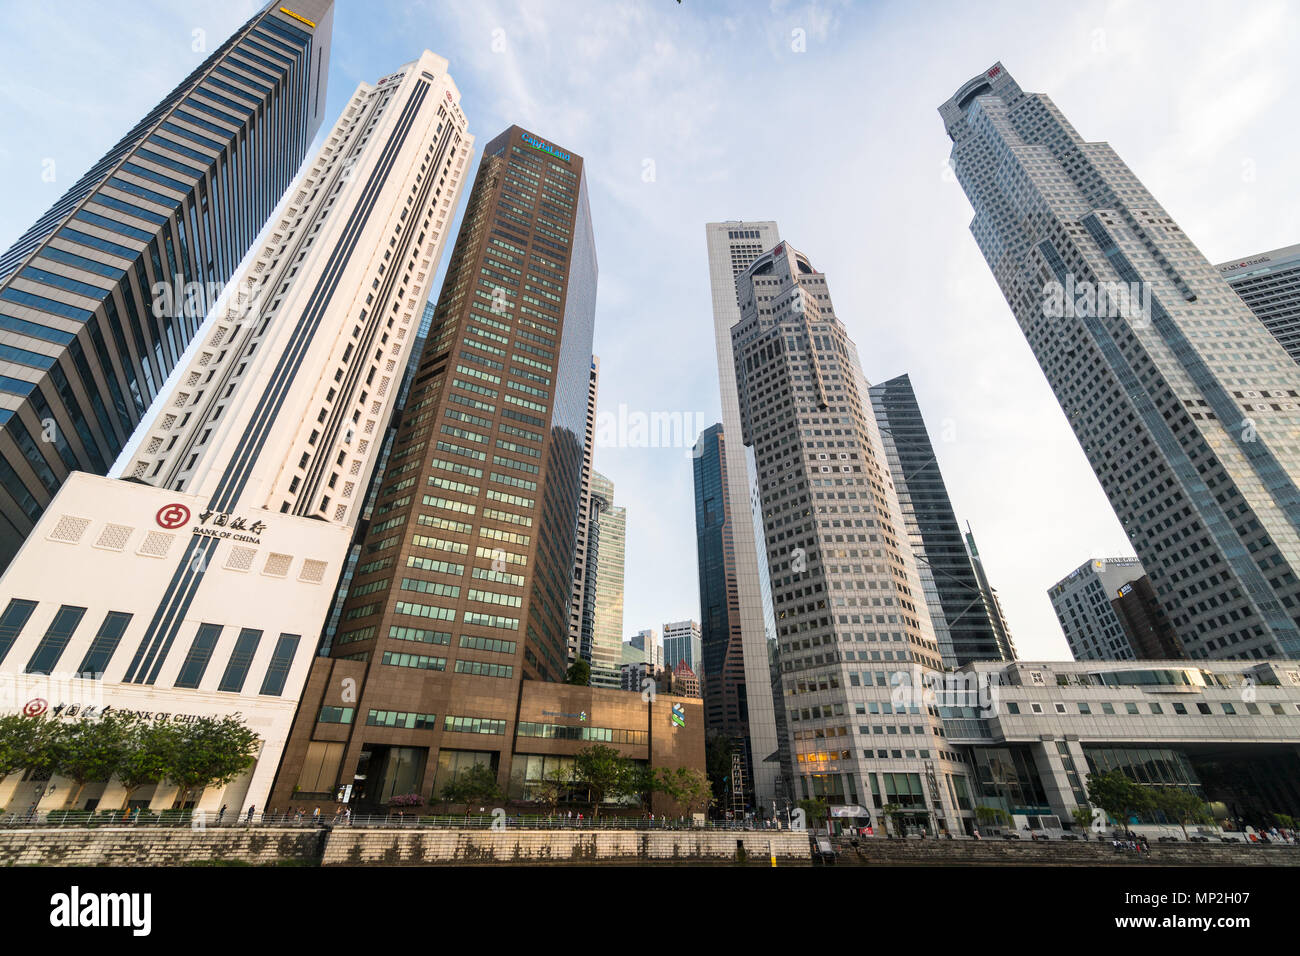 Singapore - 13 Maggio 2018: uffici bancari della Banca di Cina, Maybank e Standard Chartered linee il fiume di Singapore, una grande area busuiness in Asia Foto Stock